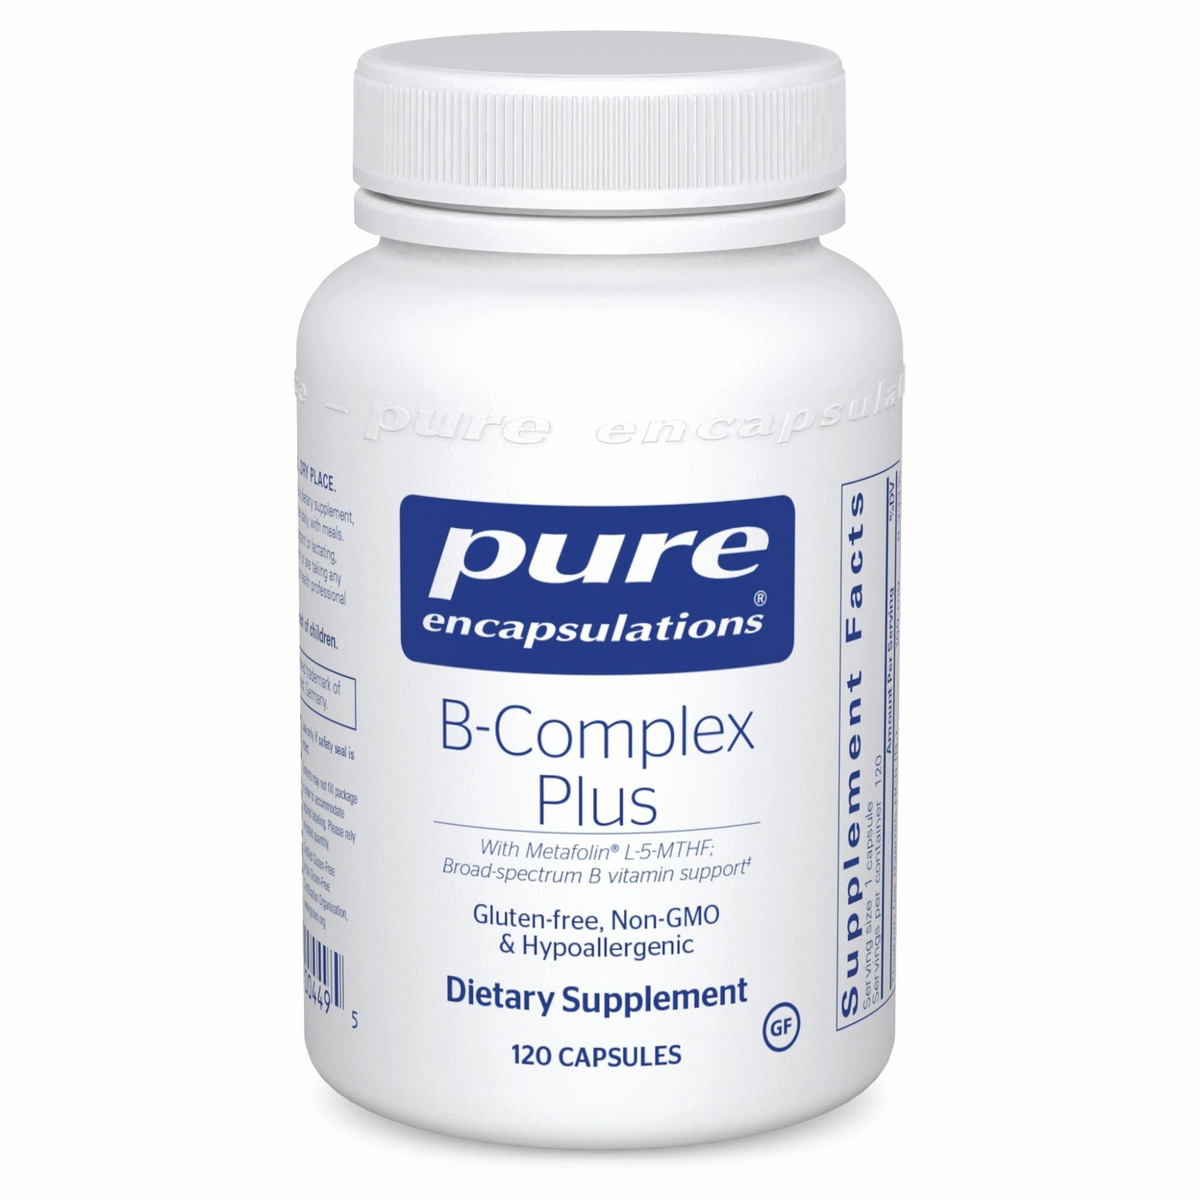 Primary Image of B-Complex Plus Capsules (120 count)